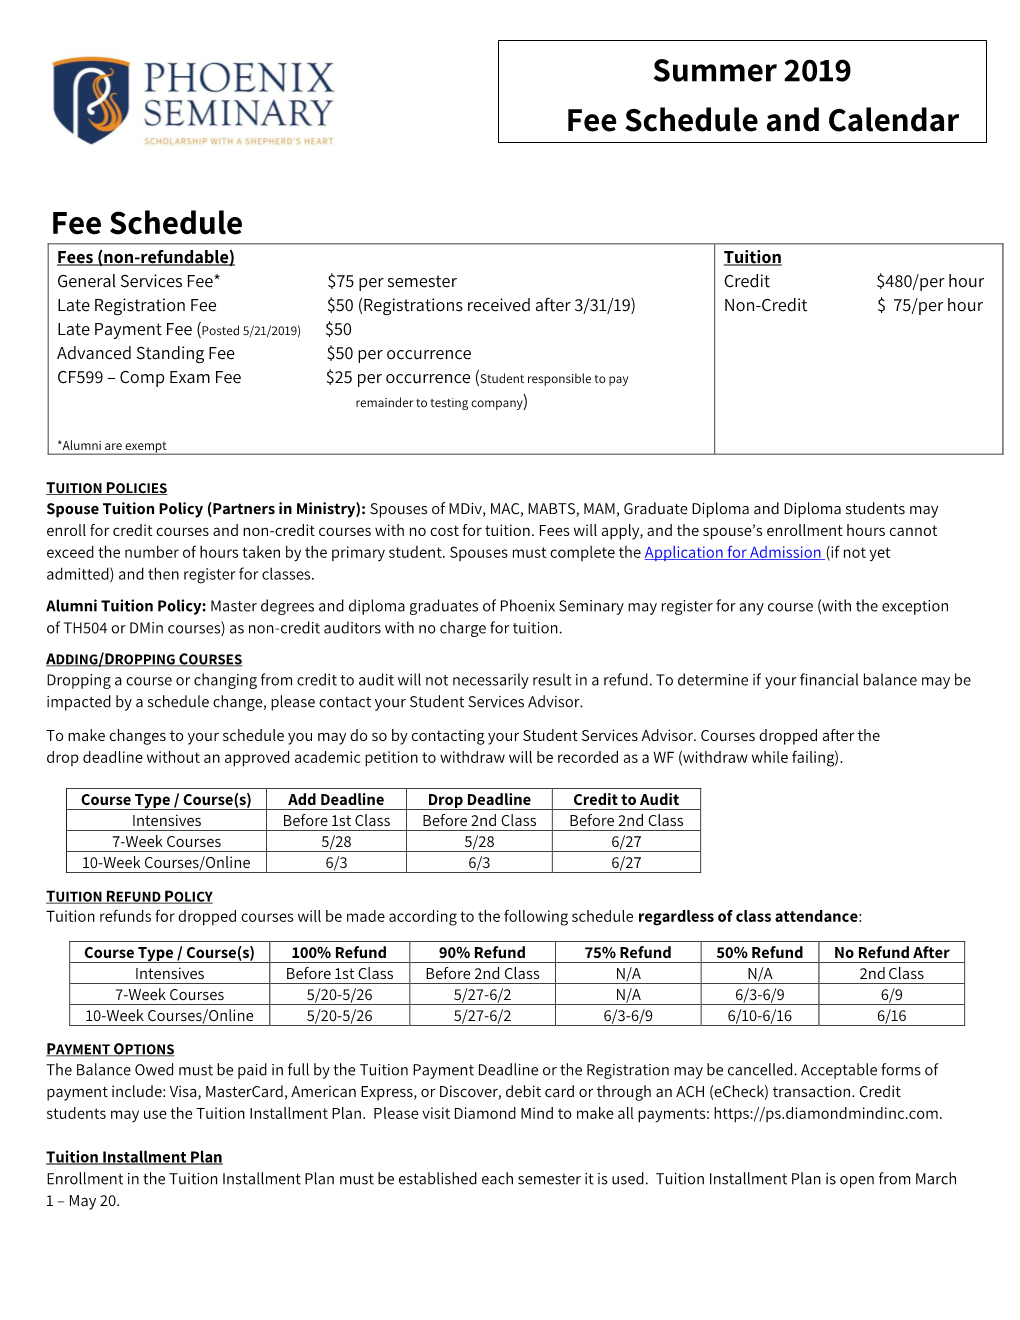 Summer 2019 Fee Schedule and Calendar